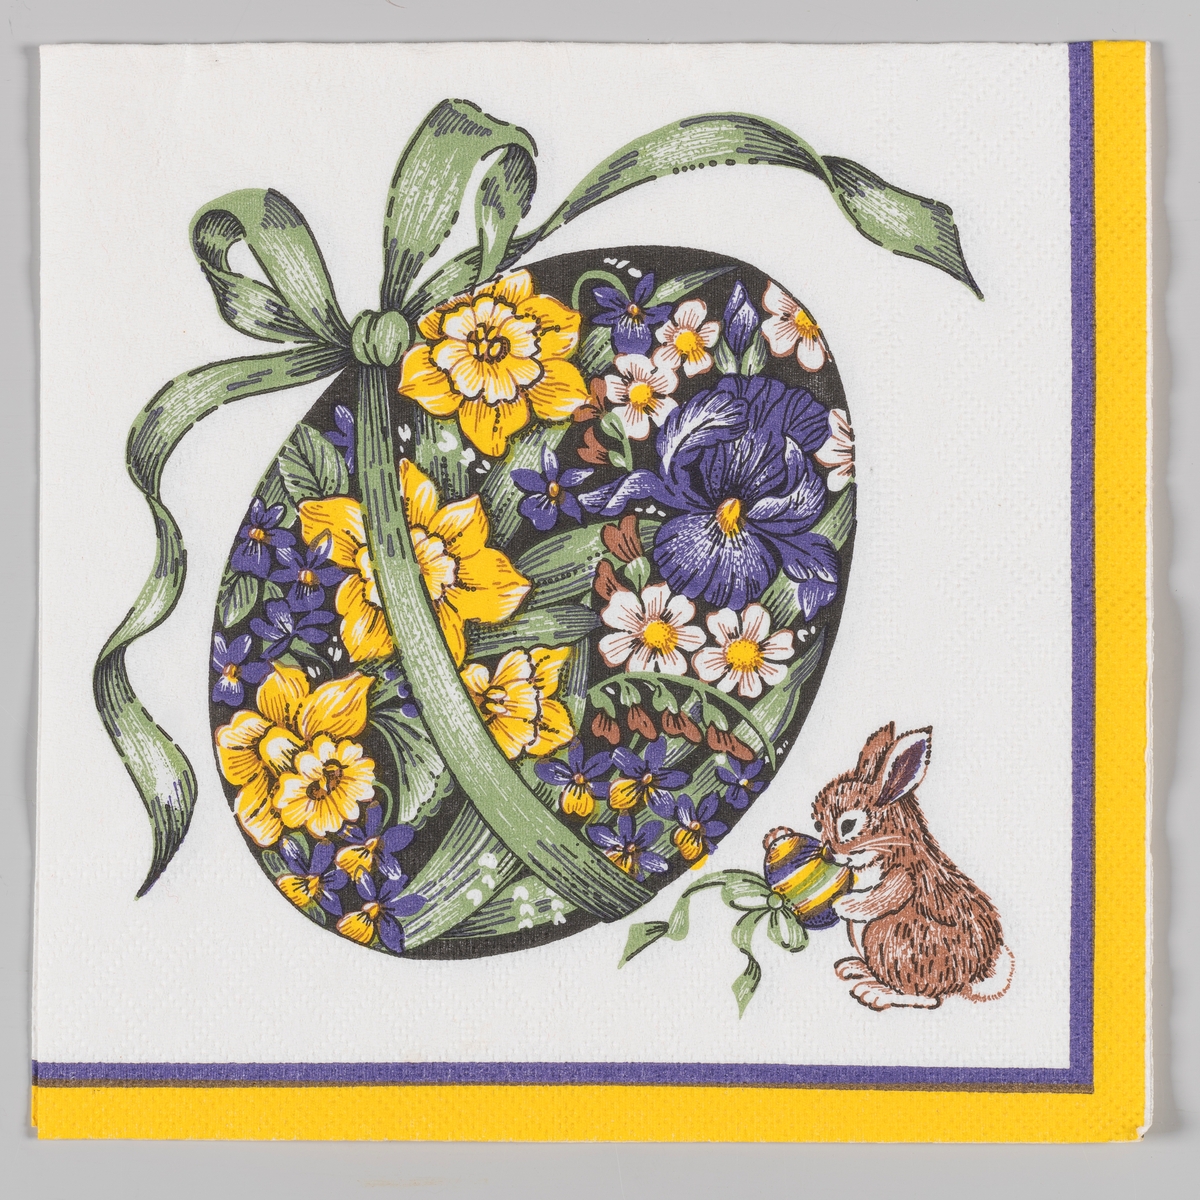 Et stort påskeegg med dekorert med blomstermotiver og ombundet med en stor grønn sløyfe. En liten hare med et stripet påskeegg med sløyfe. En lilla og gul kant.